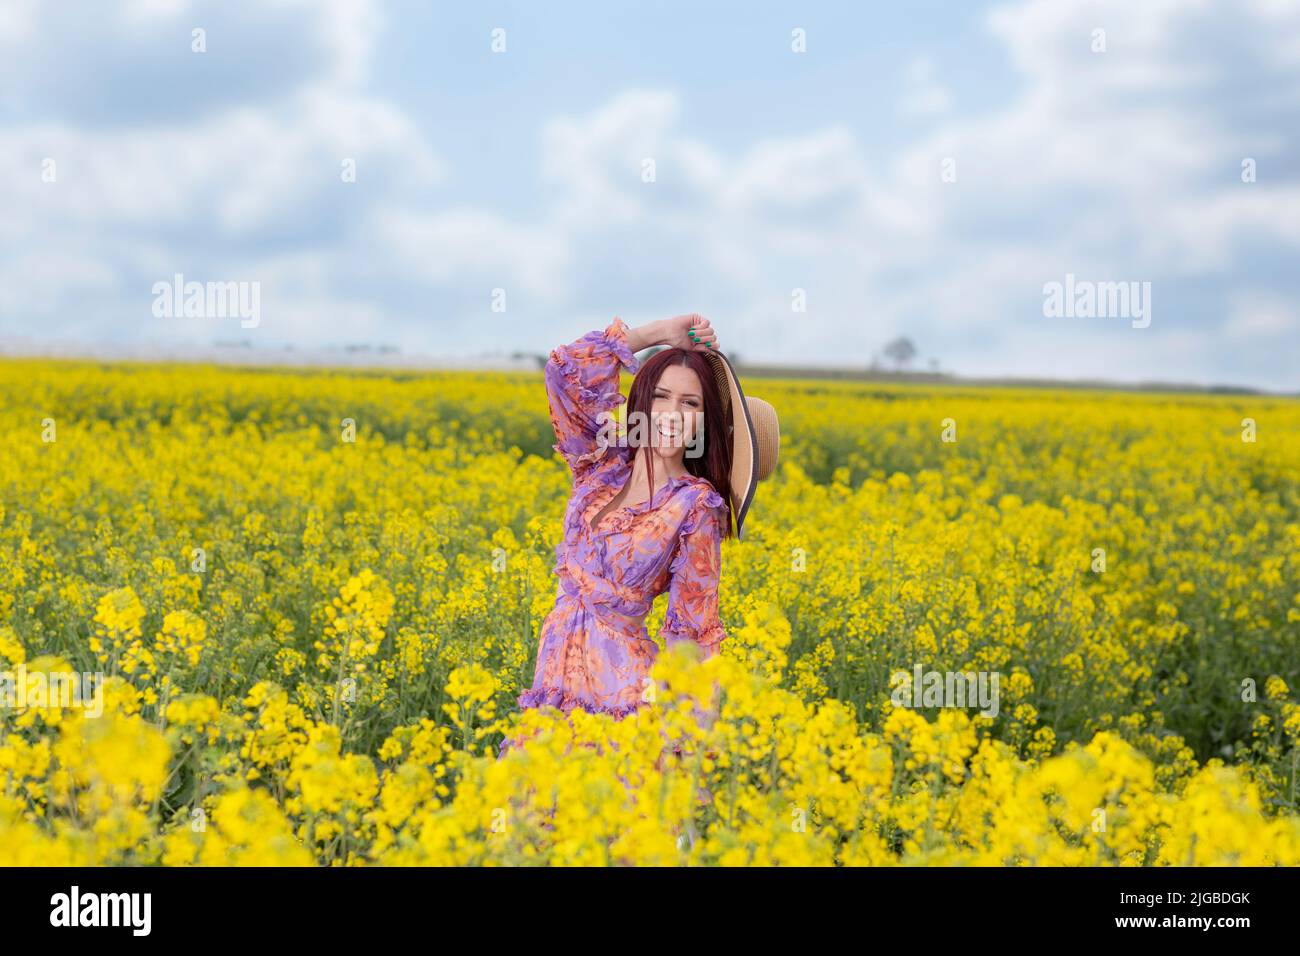 Springtime. Disfrute y relájese en la naturaleza, chica joven en el campo amarillo Foto de stock